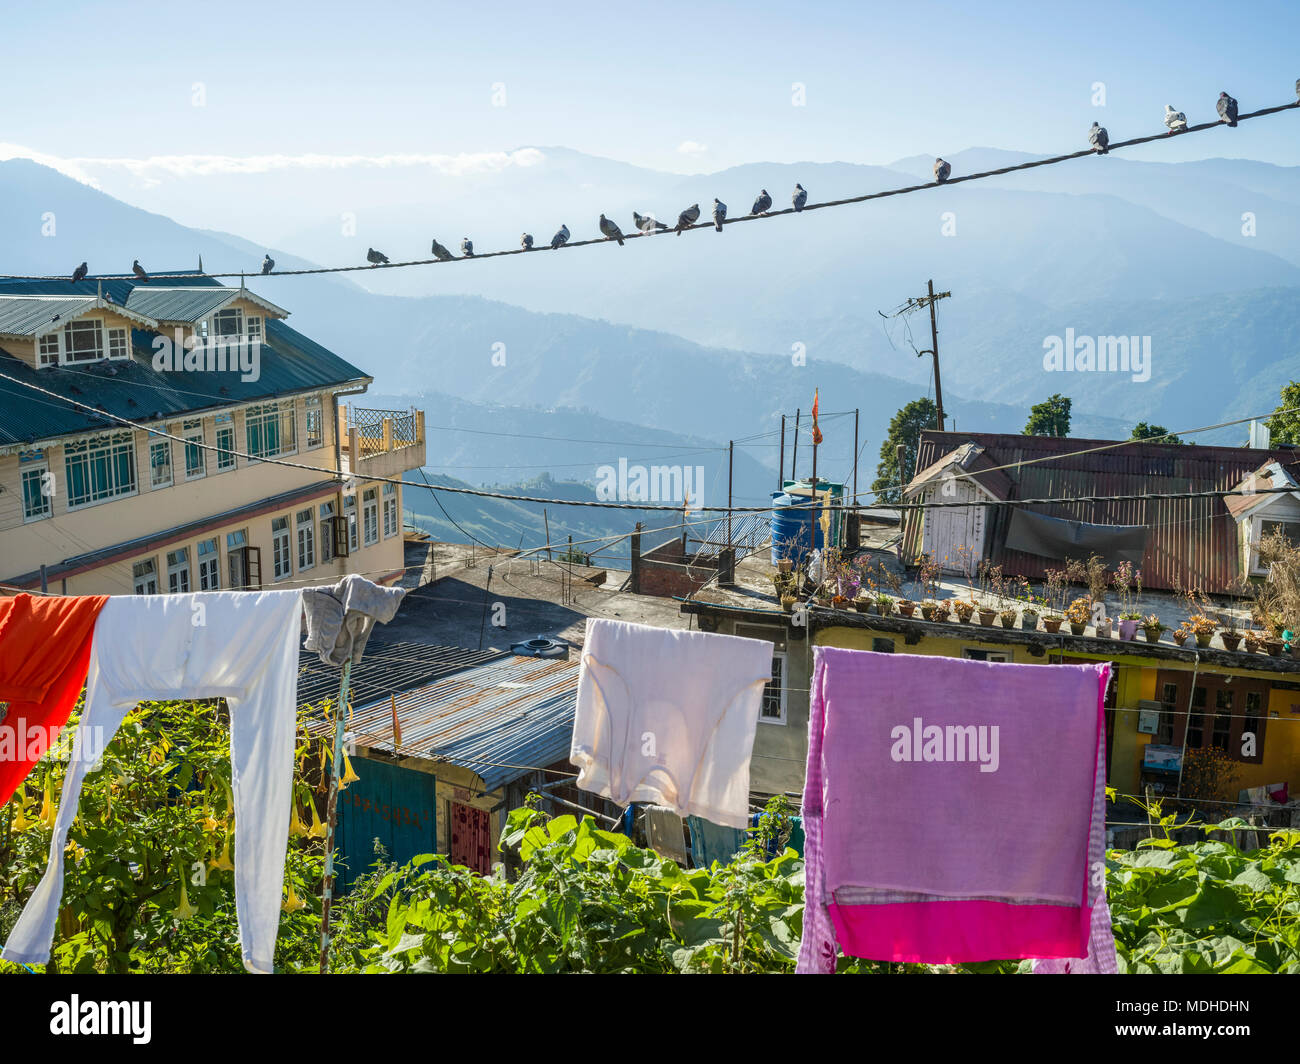 Oiseaux sur un fil électrique et un vêtement pendu sur une corde avec l'Himalaya dans la distance, Darjeeling, West Bengal, India Banque D'Images